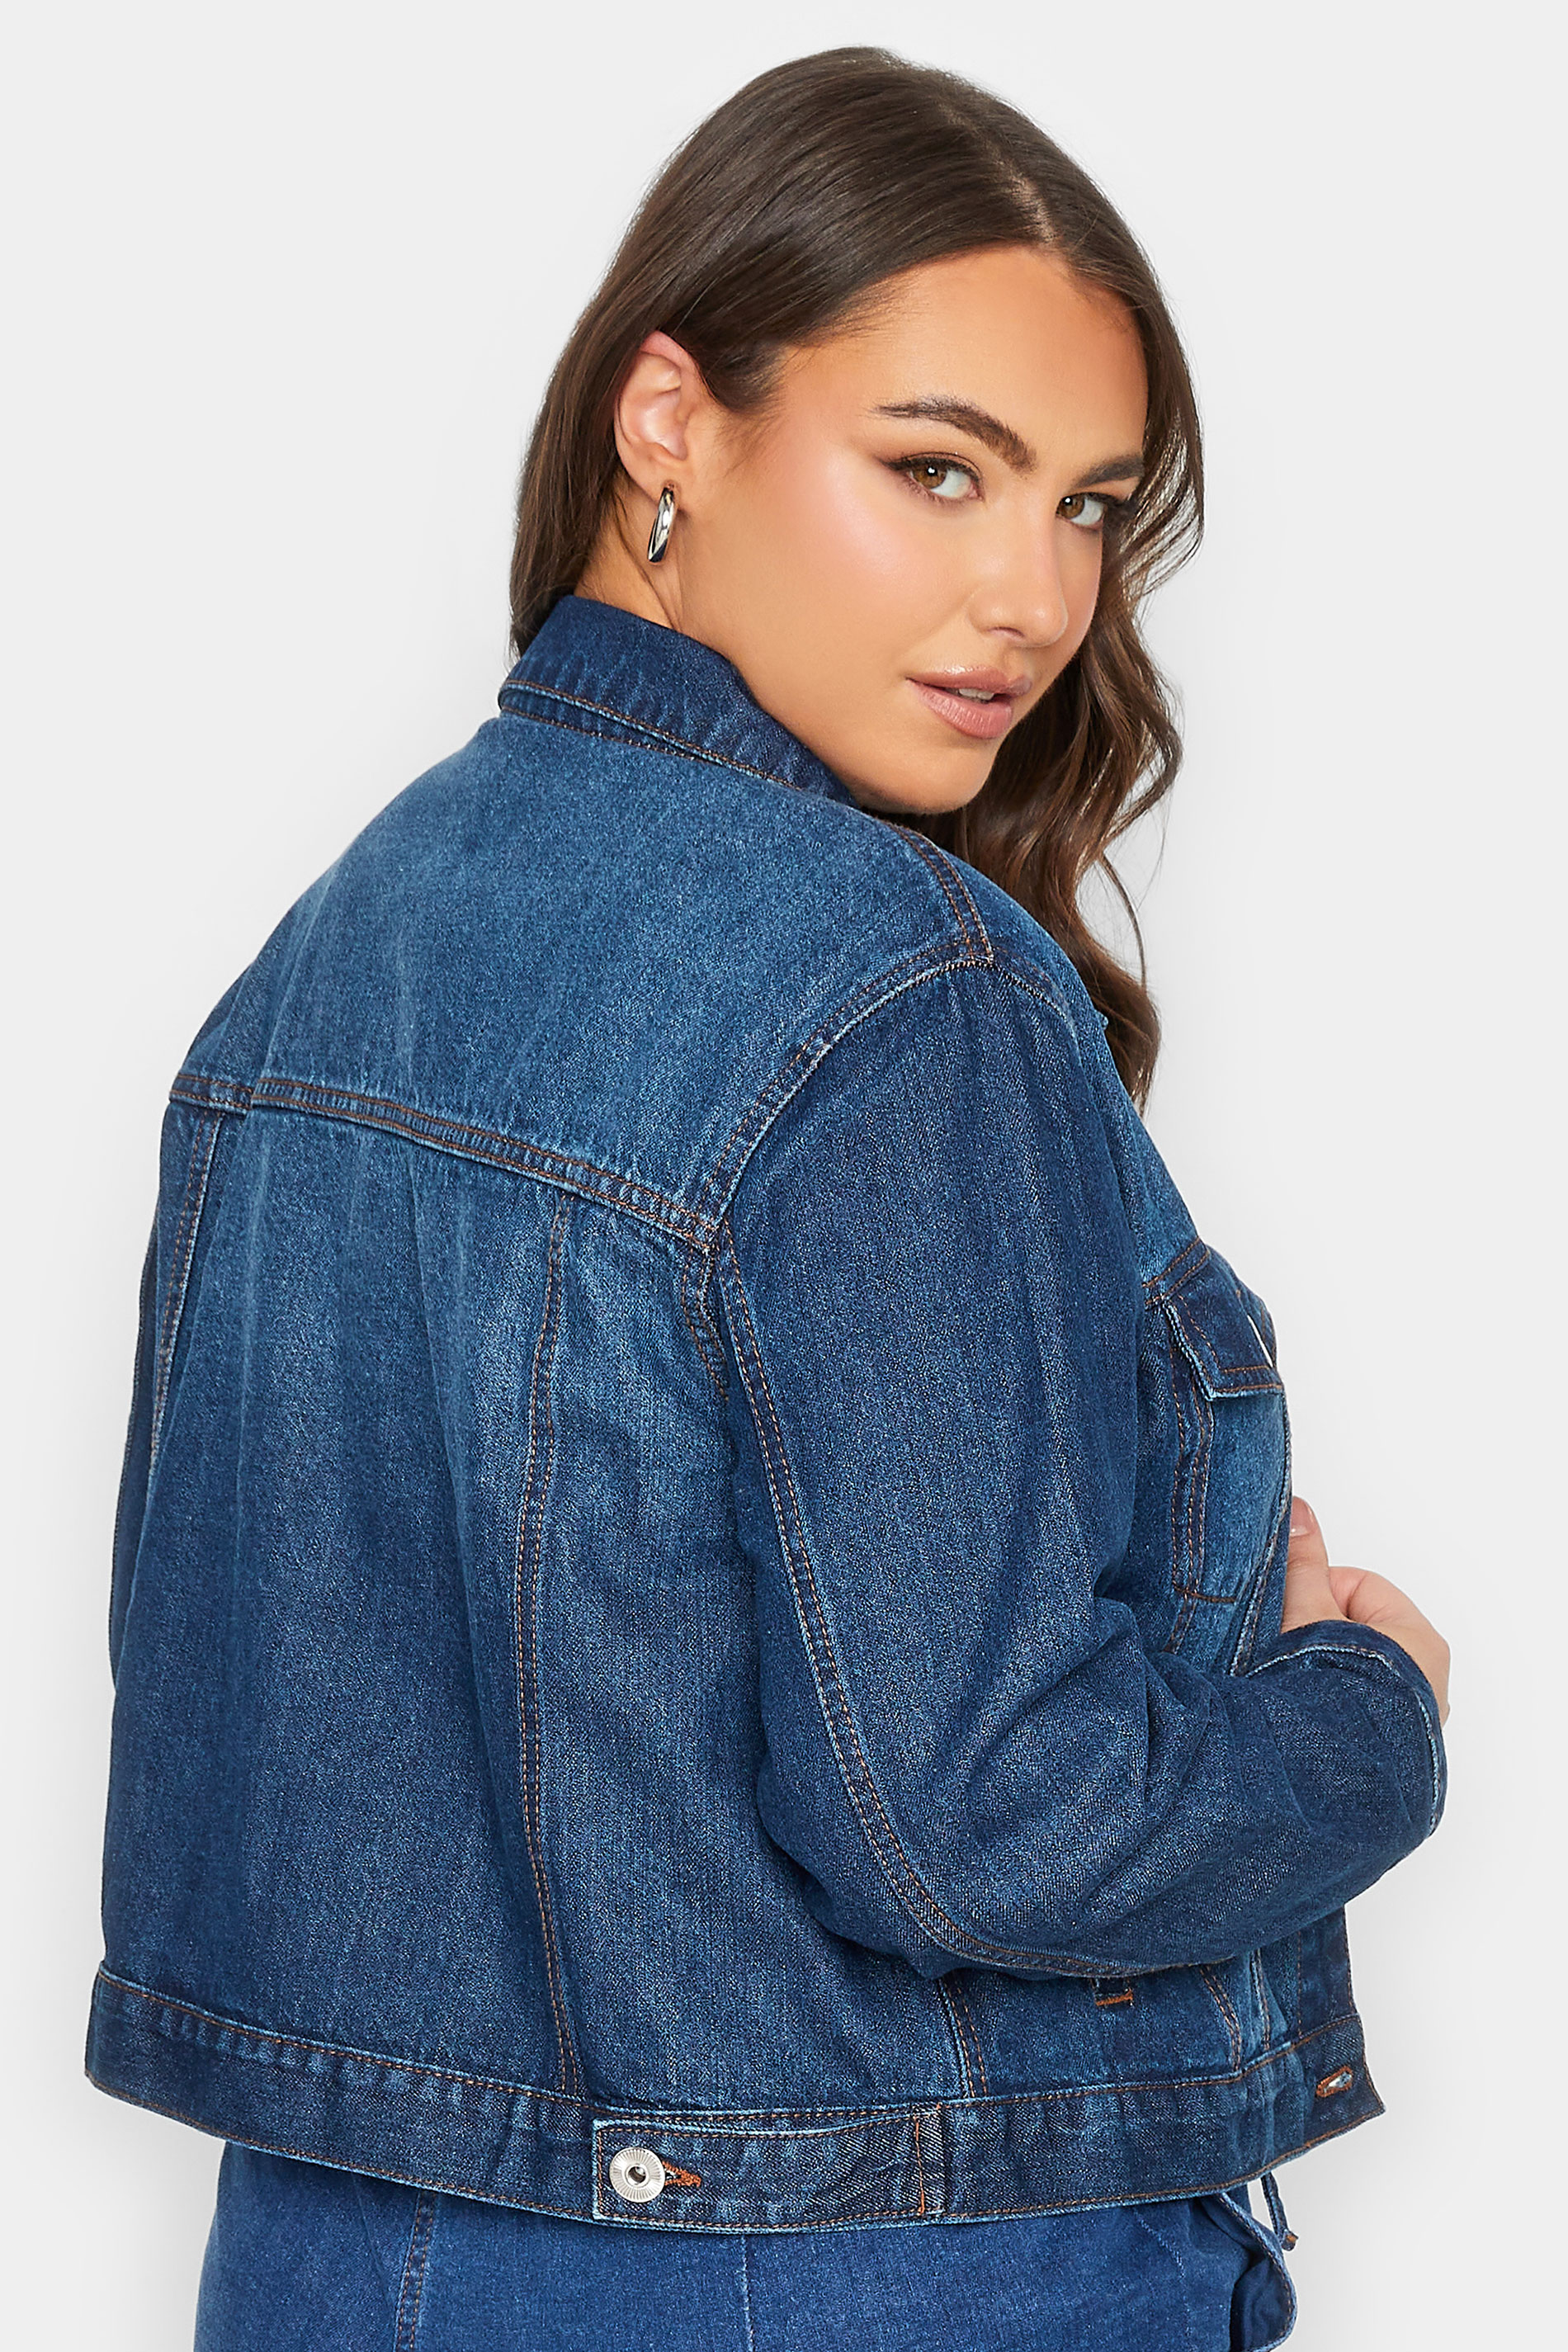 YOURS Plus Size Indigo Blue Denim Jacket | Yours Clothing 3